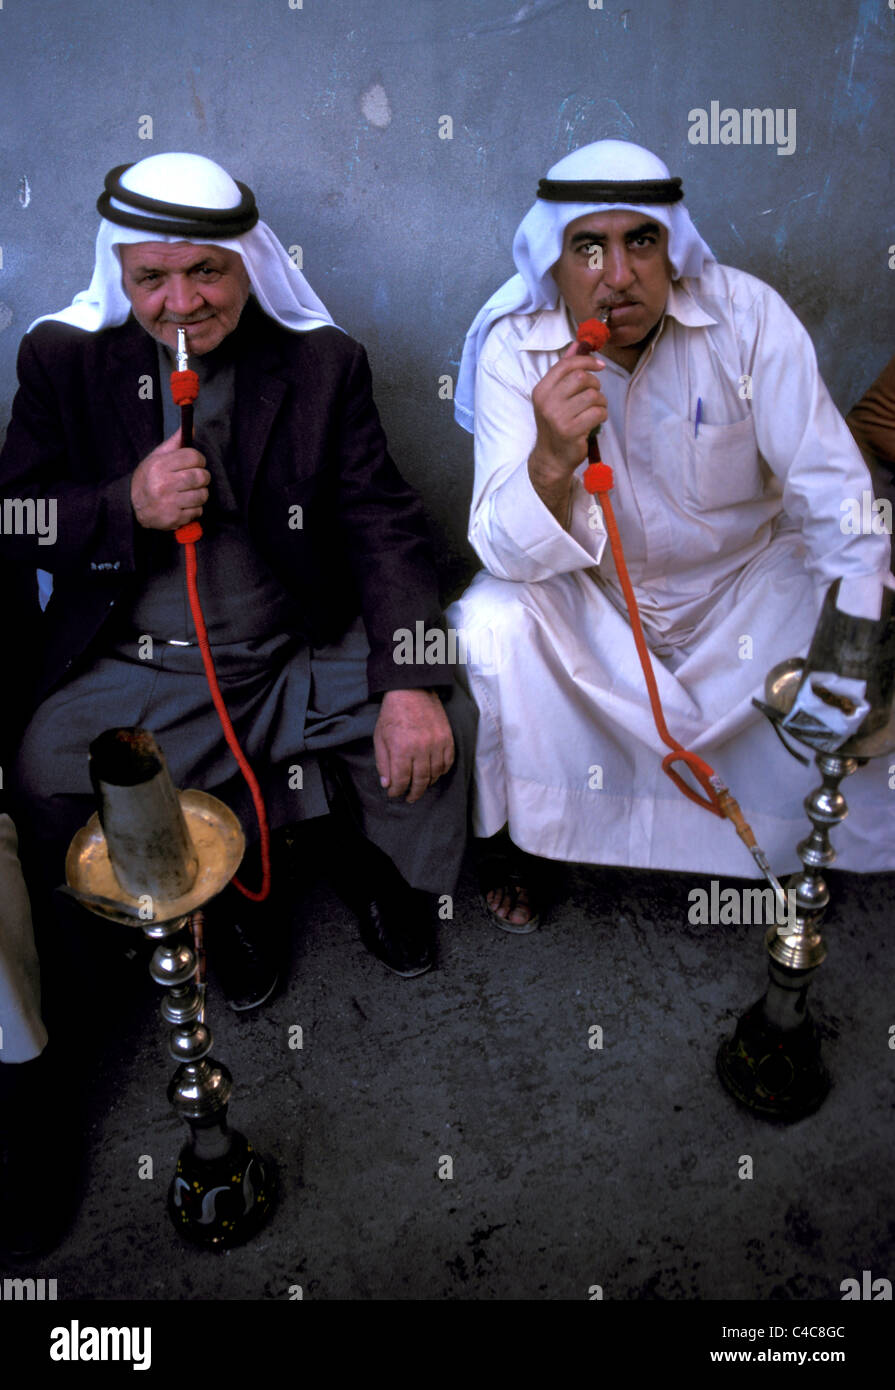 Zwei Männer, die in Aleppo, Syrien, Shishas oder Wasserleitungen rauchen Stockfoto